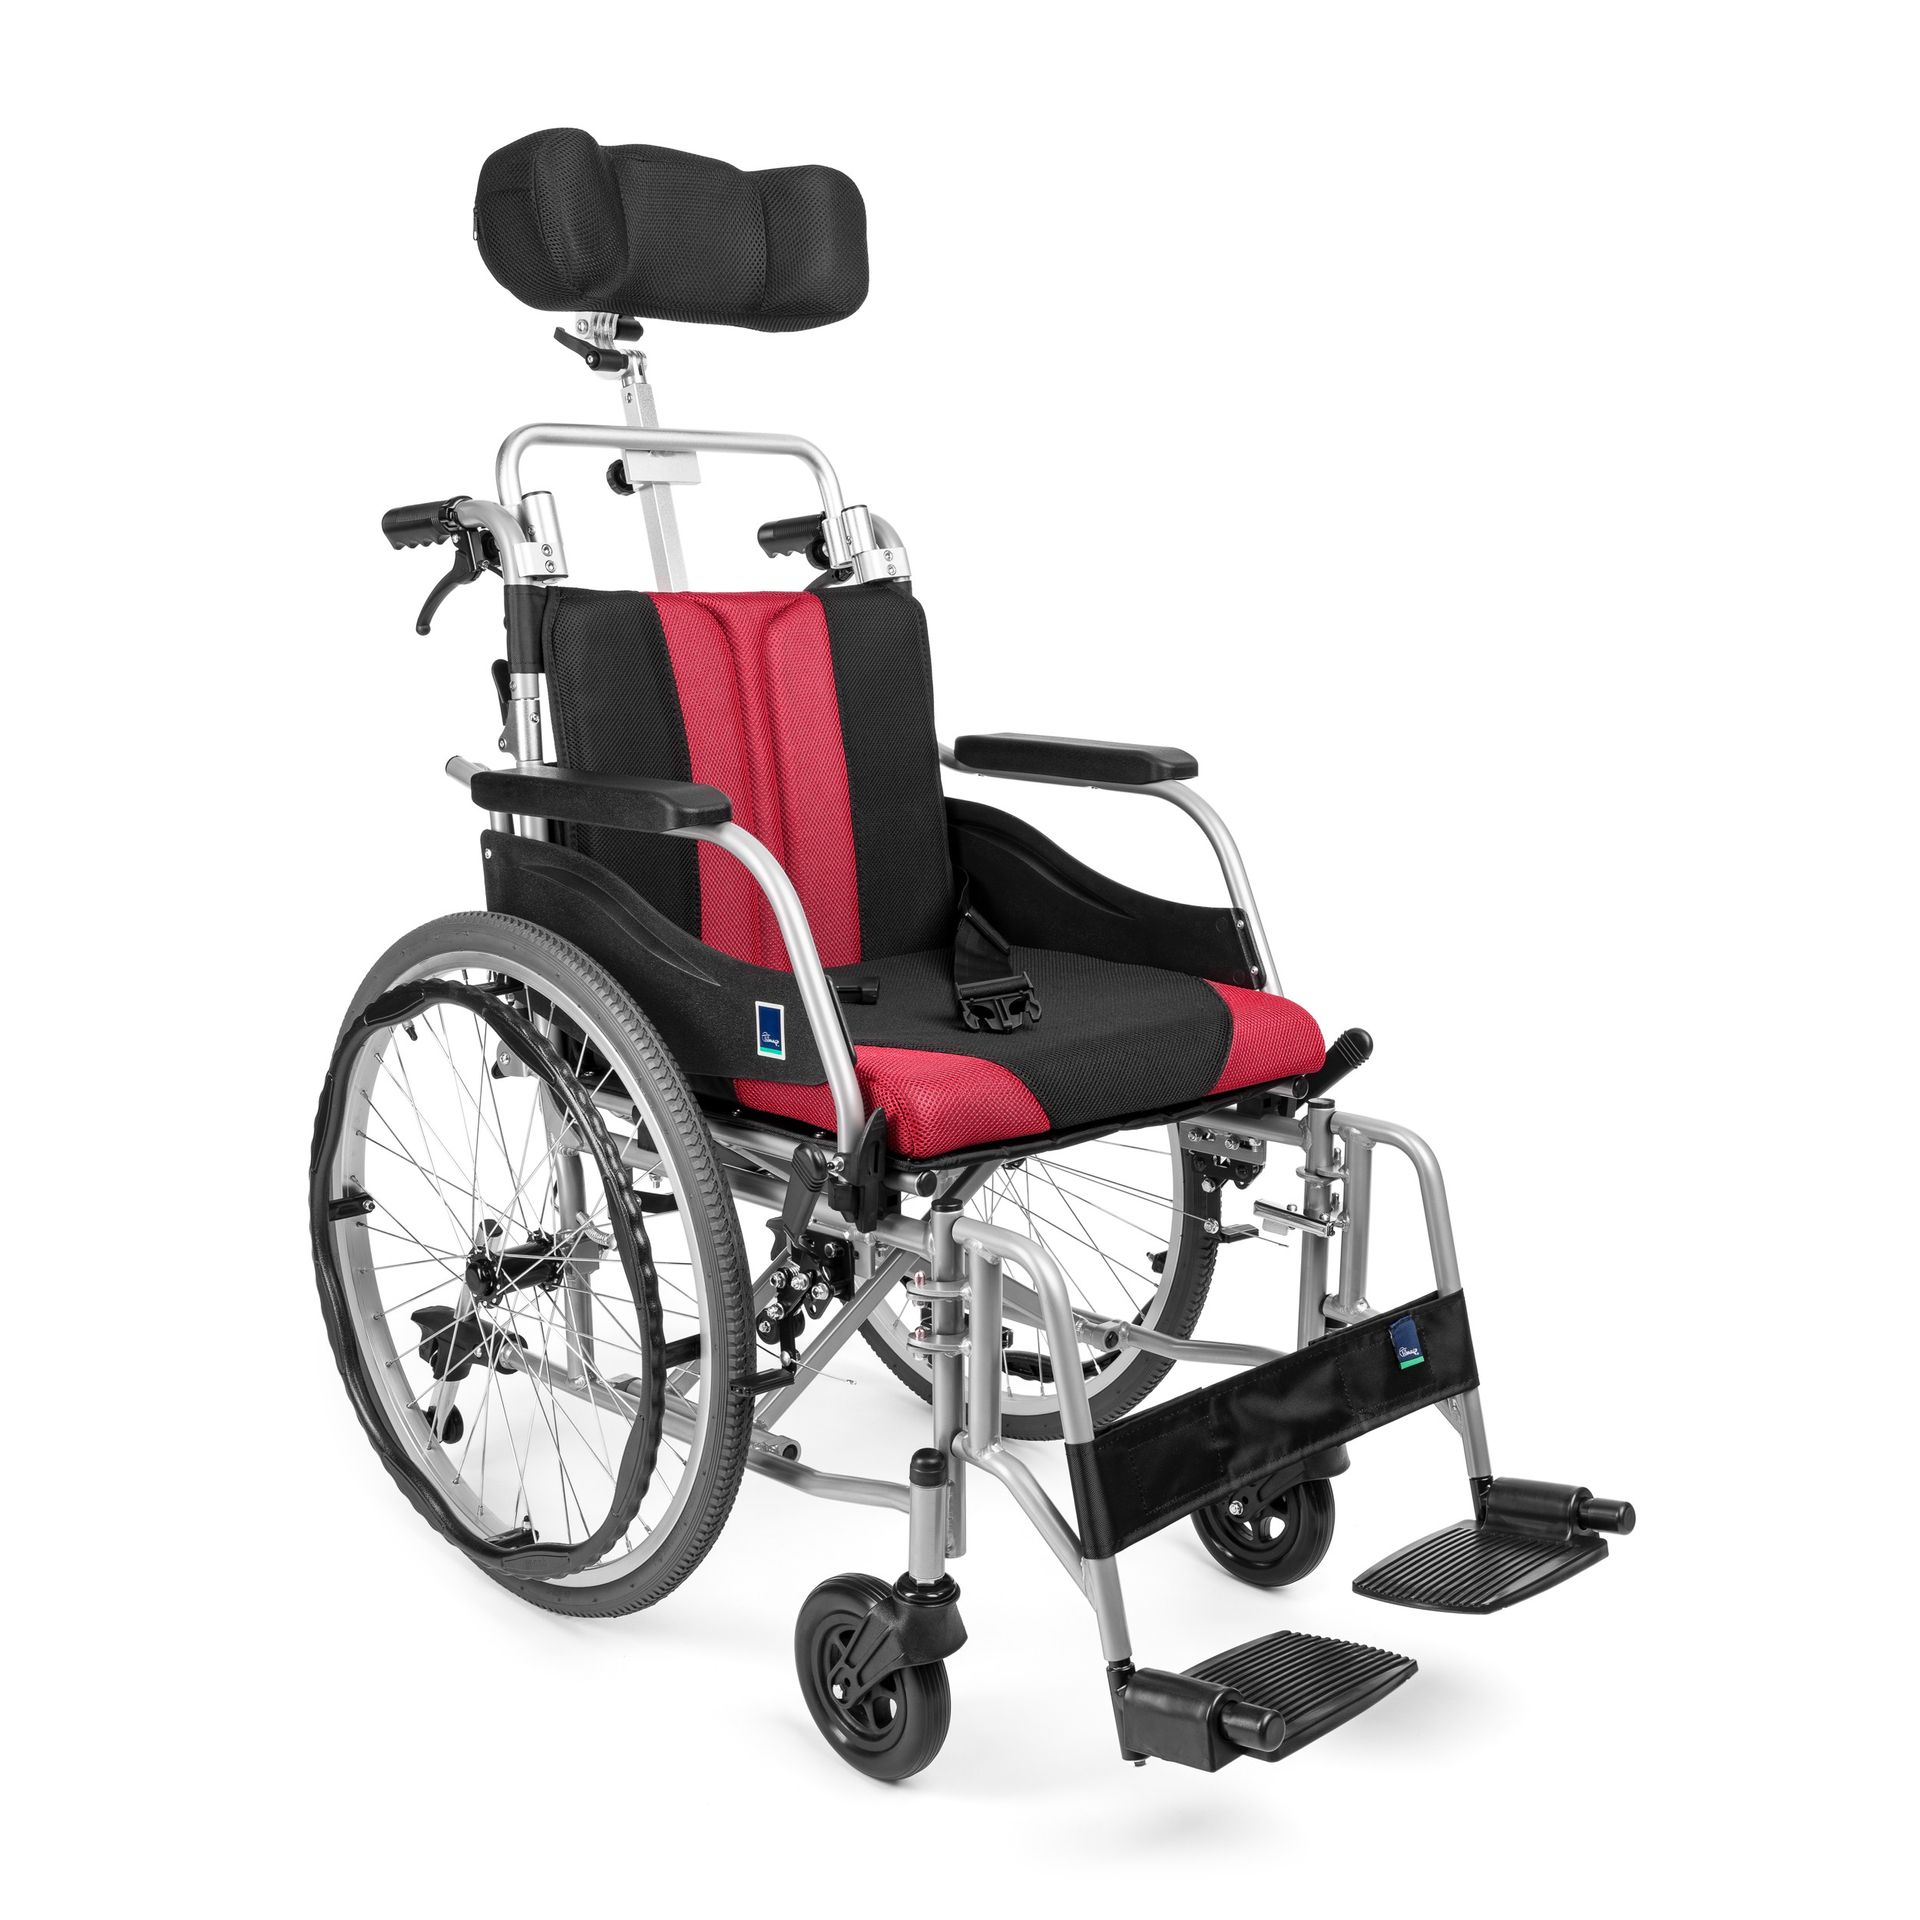 Aluminiowy wózek inwalidzki z zagłówkiem - PREMIUM-TIM PLUS : Kolor - Bordo